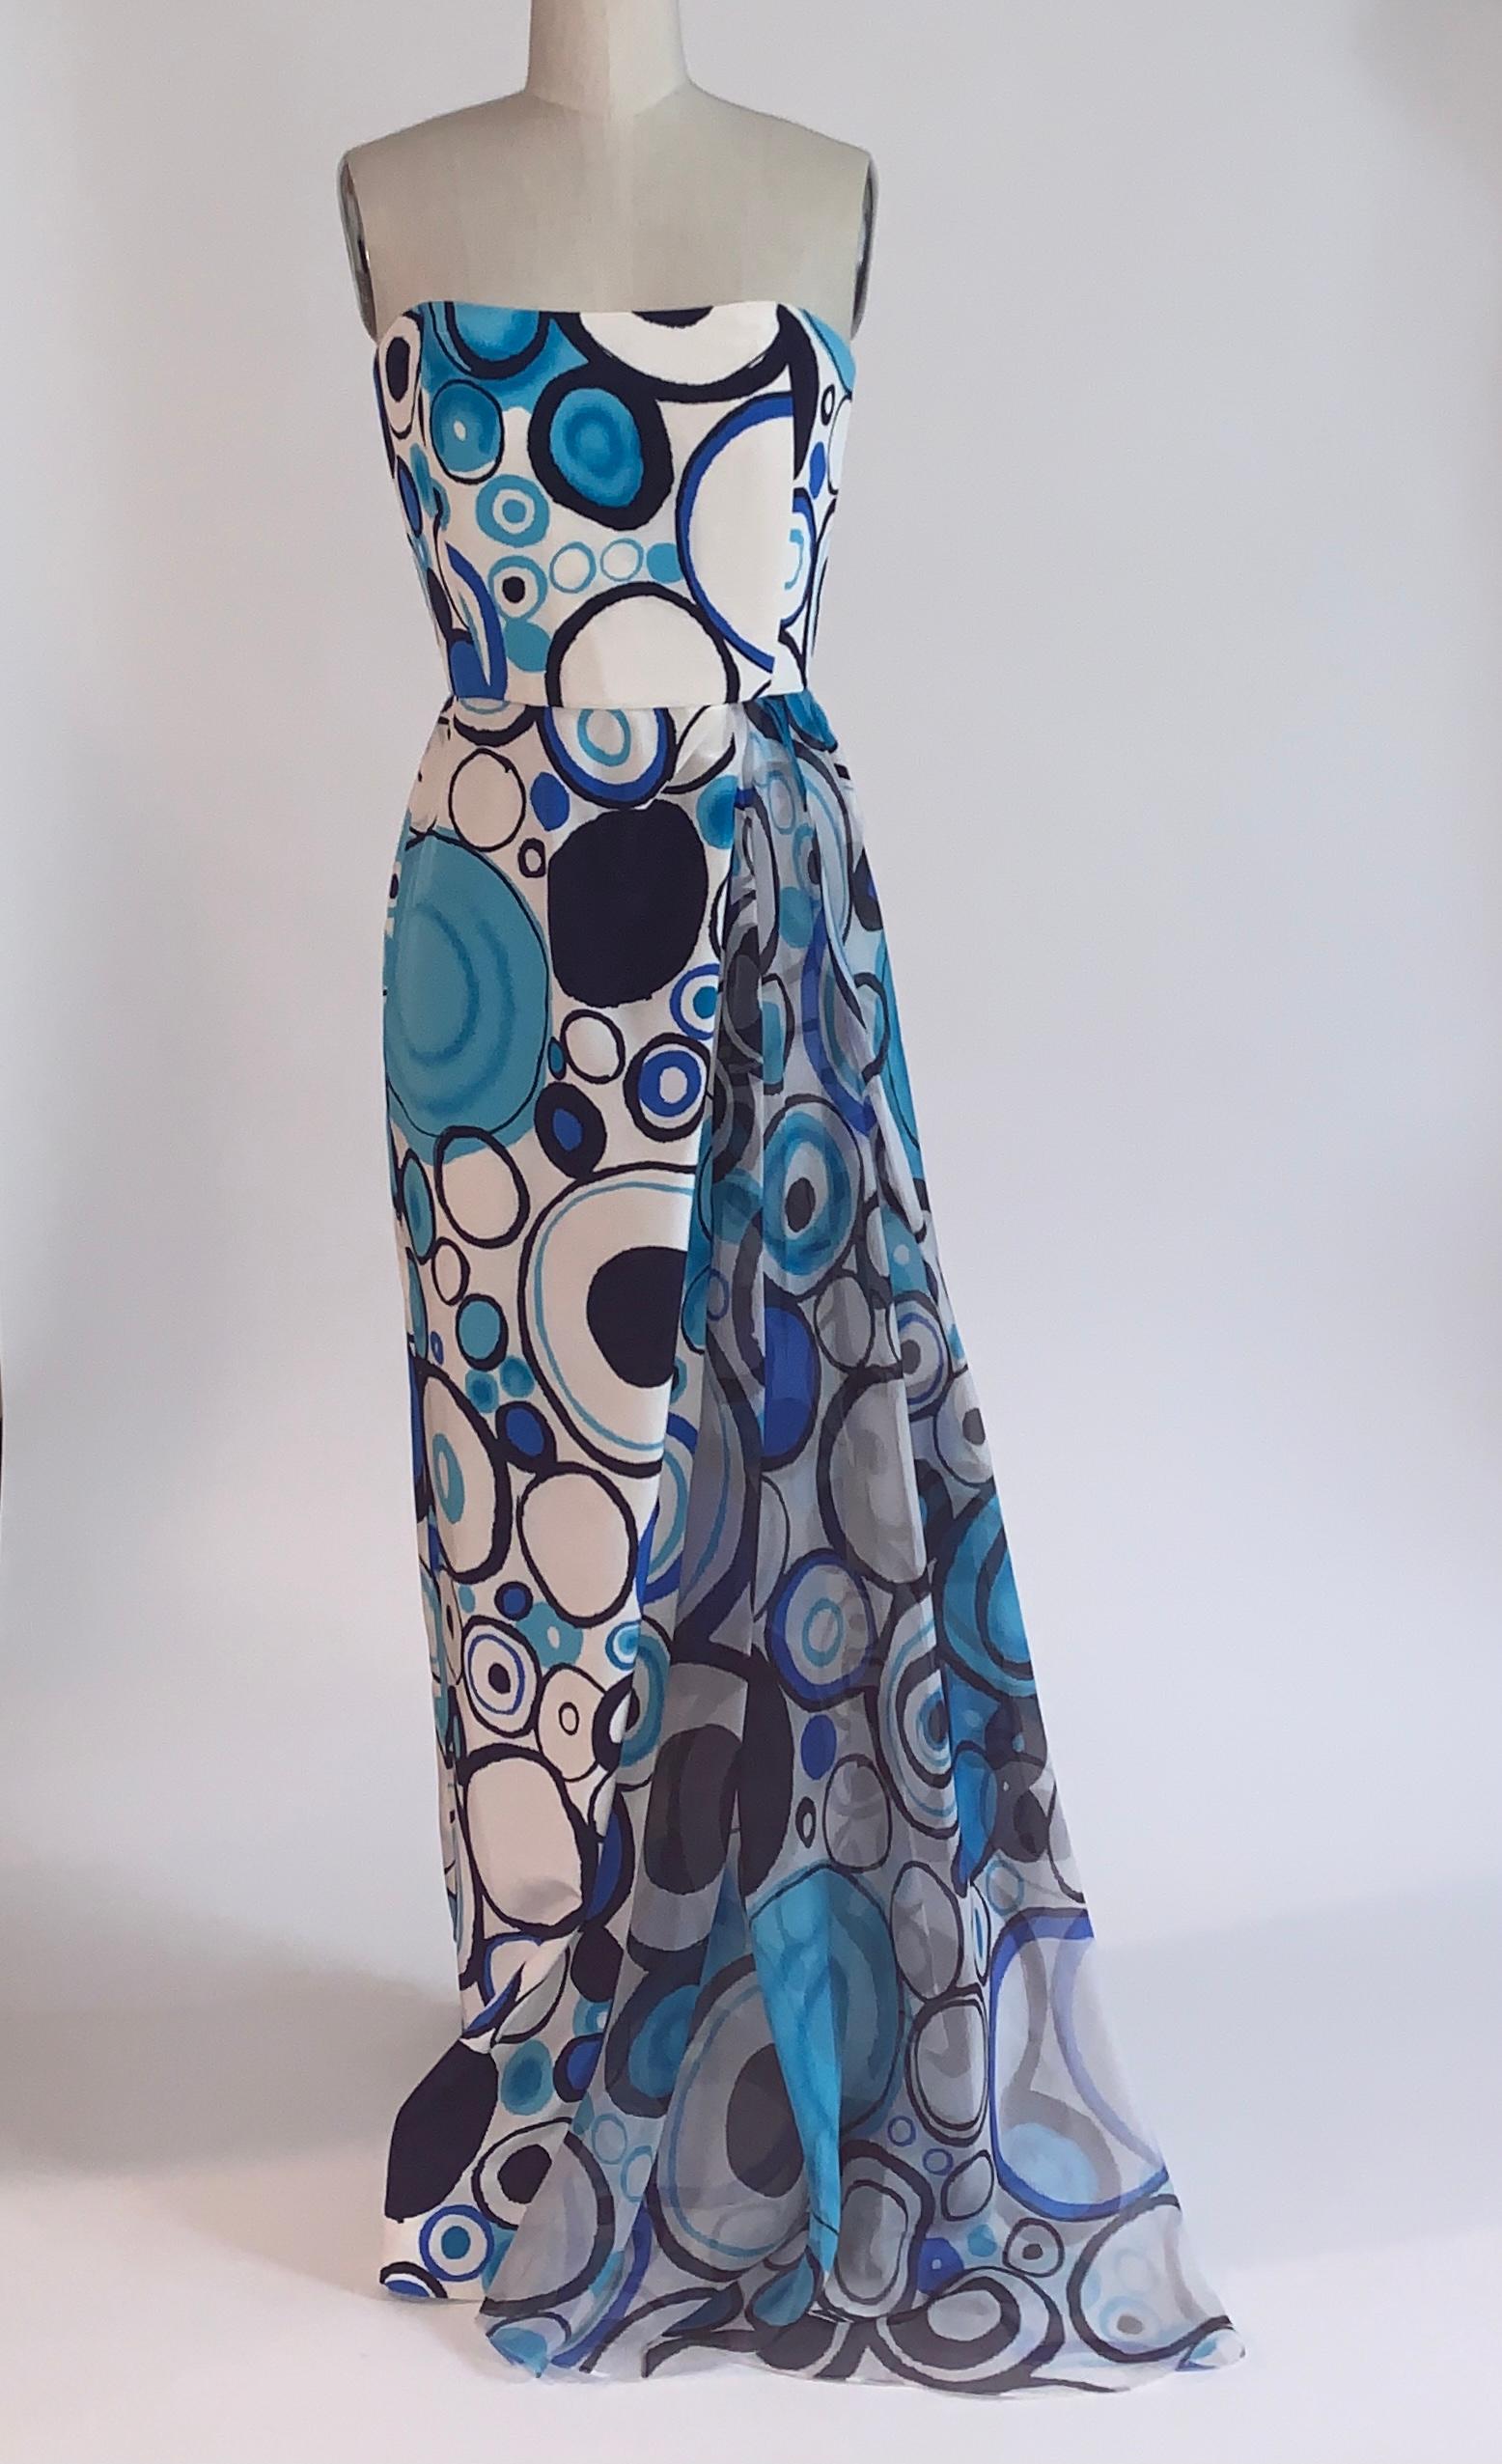 Blau-weißes, trägerloses Seidenkleid von Lily Samii mit abstraktem Kreismuster in Hell- und Marineblau.  Drapierter Chiffoneinsatz auf der Vorderseite. Seitlicher Schlitz vorne hinter der Drapierung. Korsettstäbchen am Mieder. Rückenreißverschluss